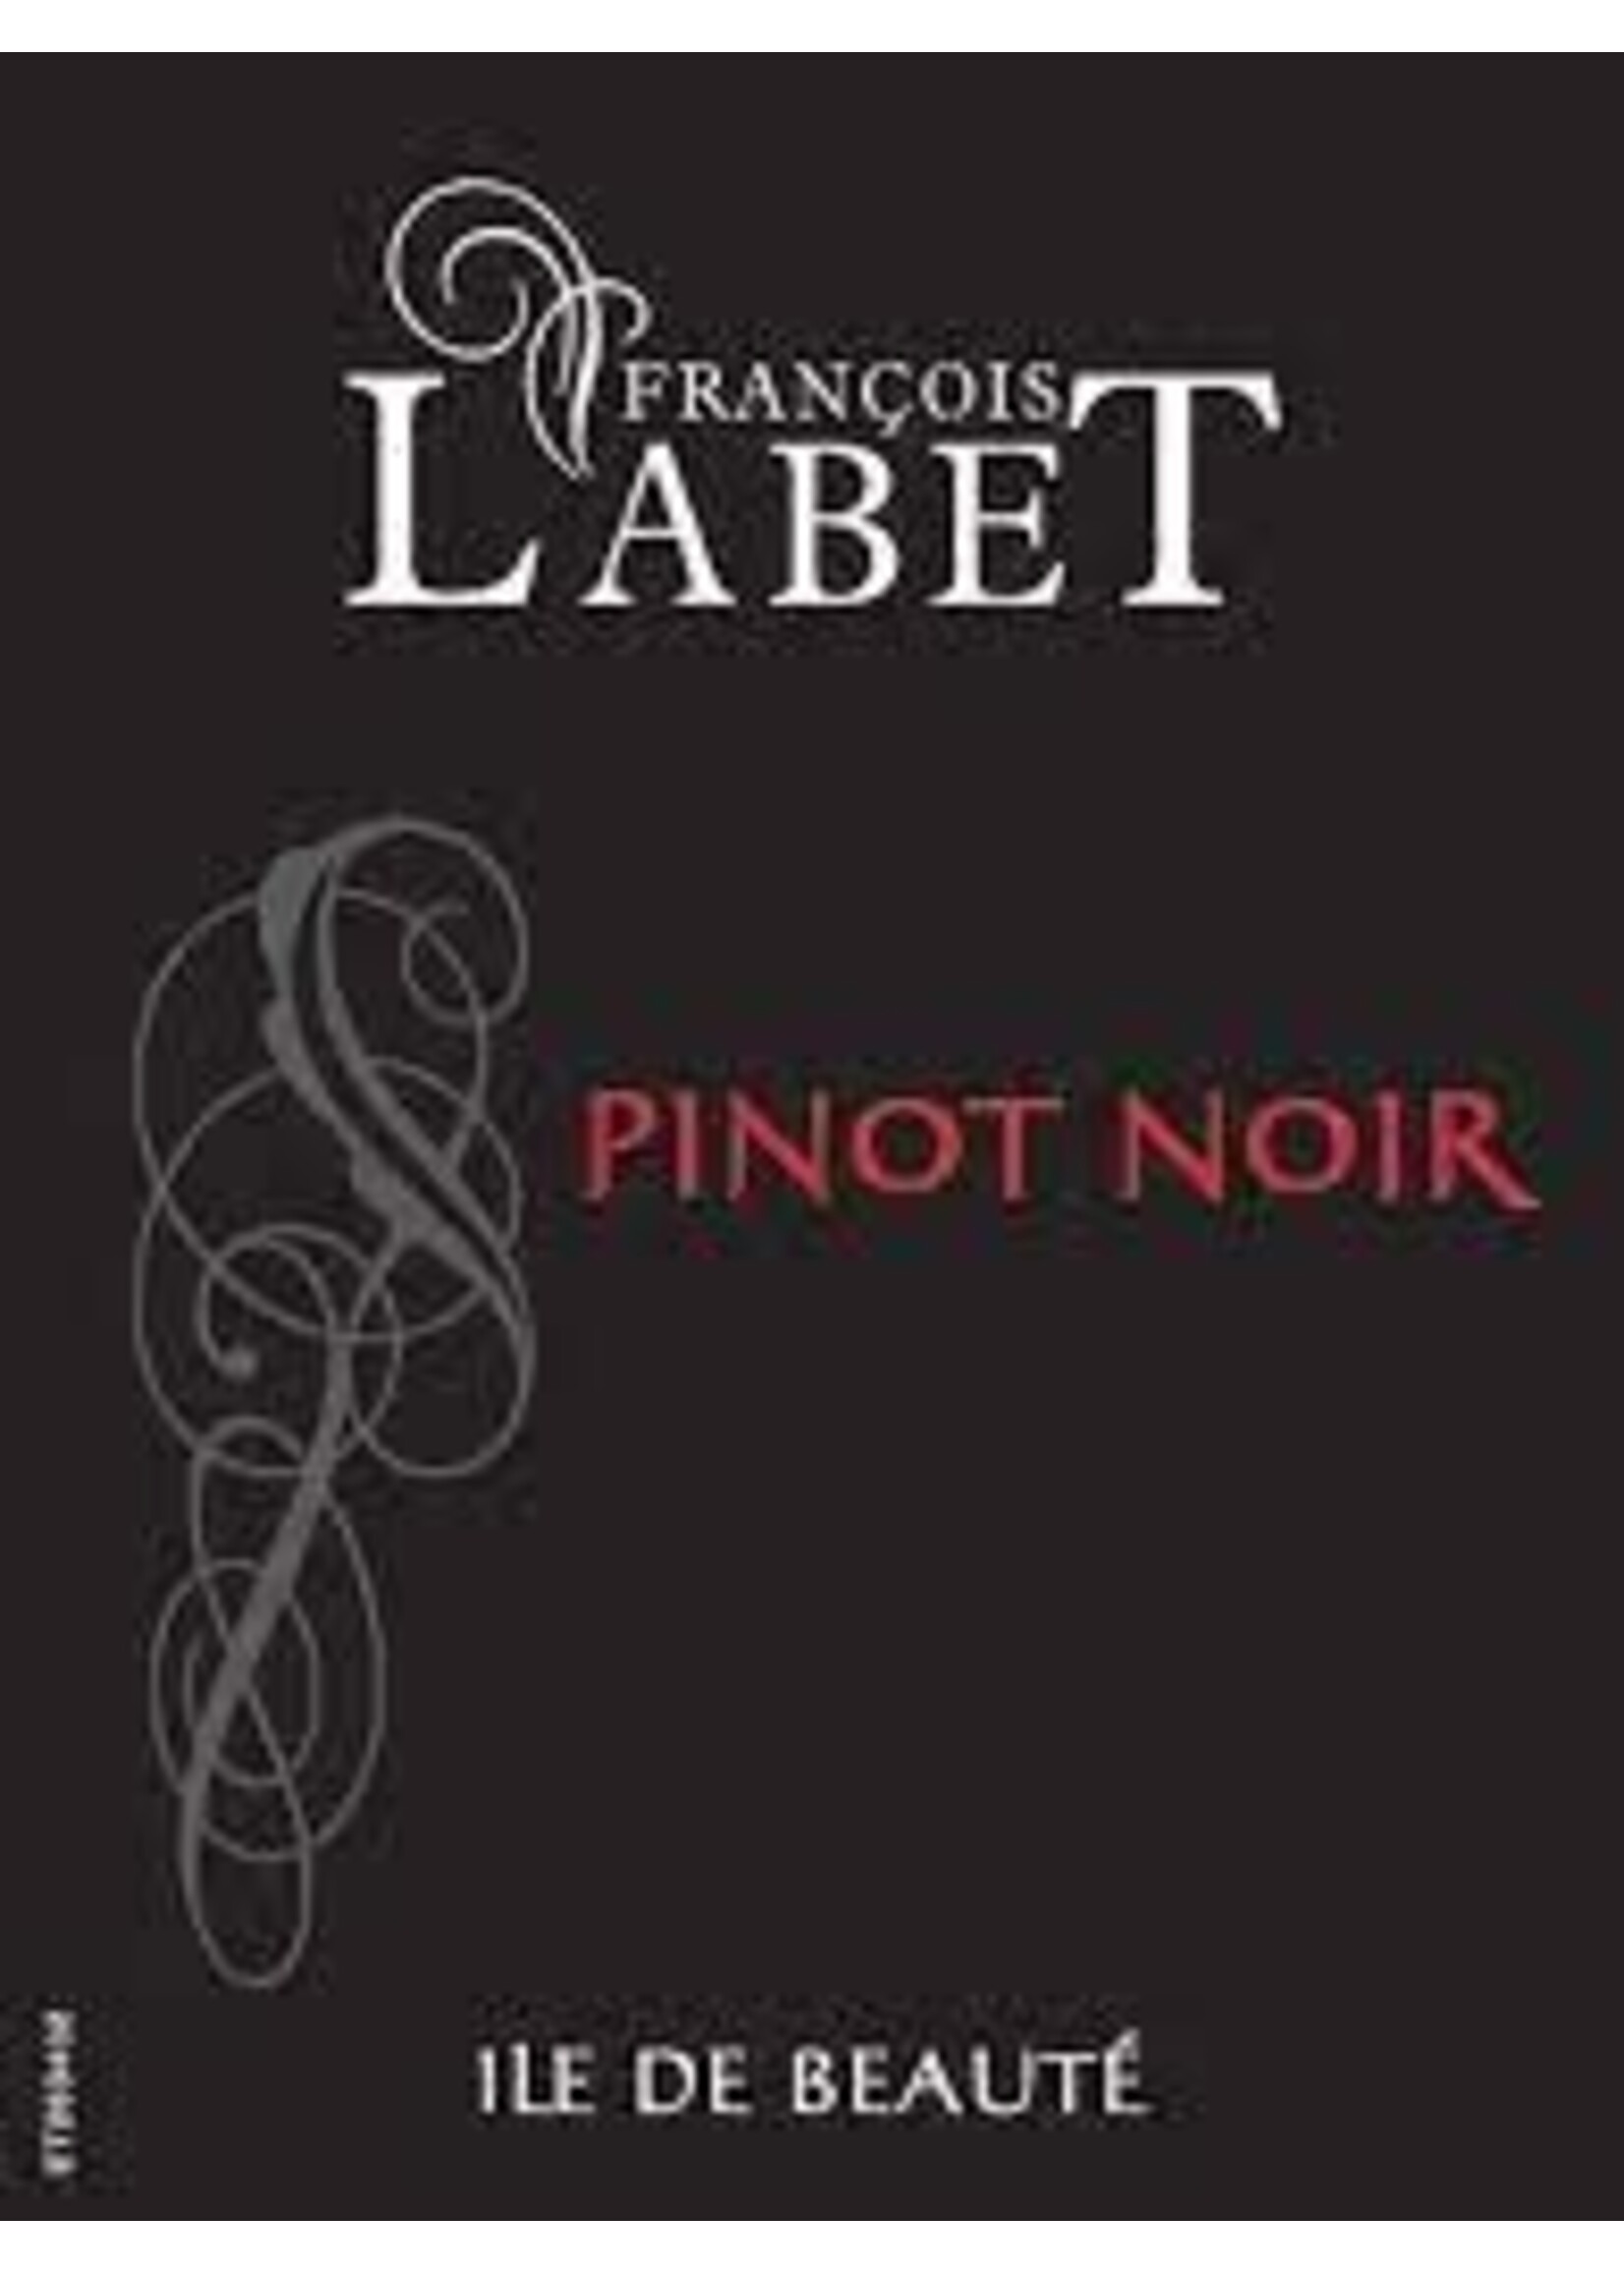 Francois Labet 2021 Pinot Noir 'Ile de Beaute' 750ml